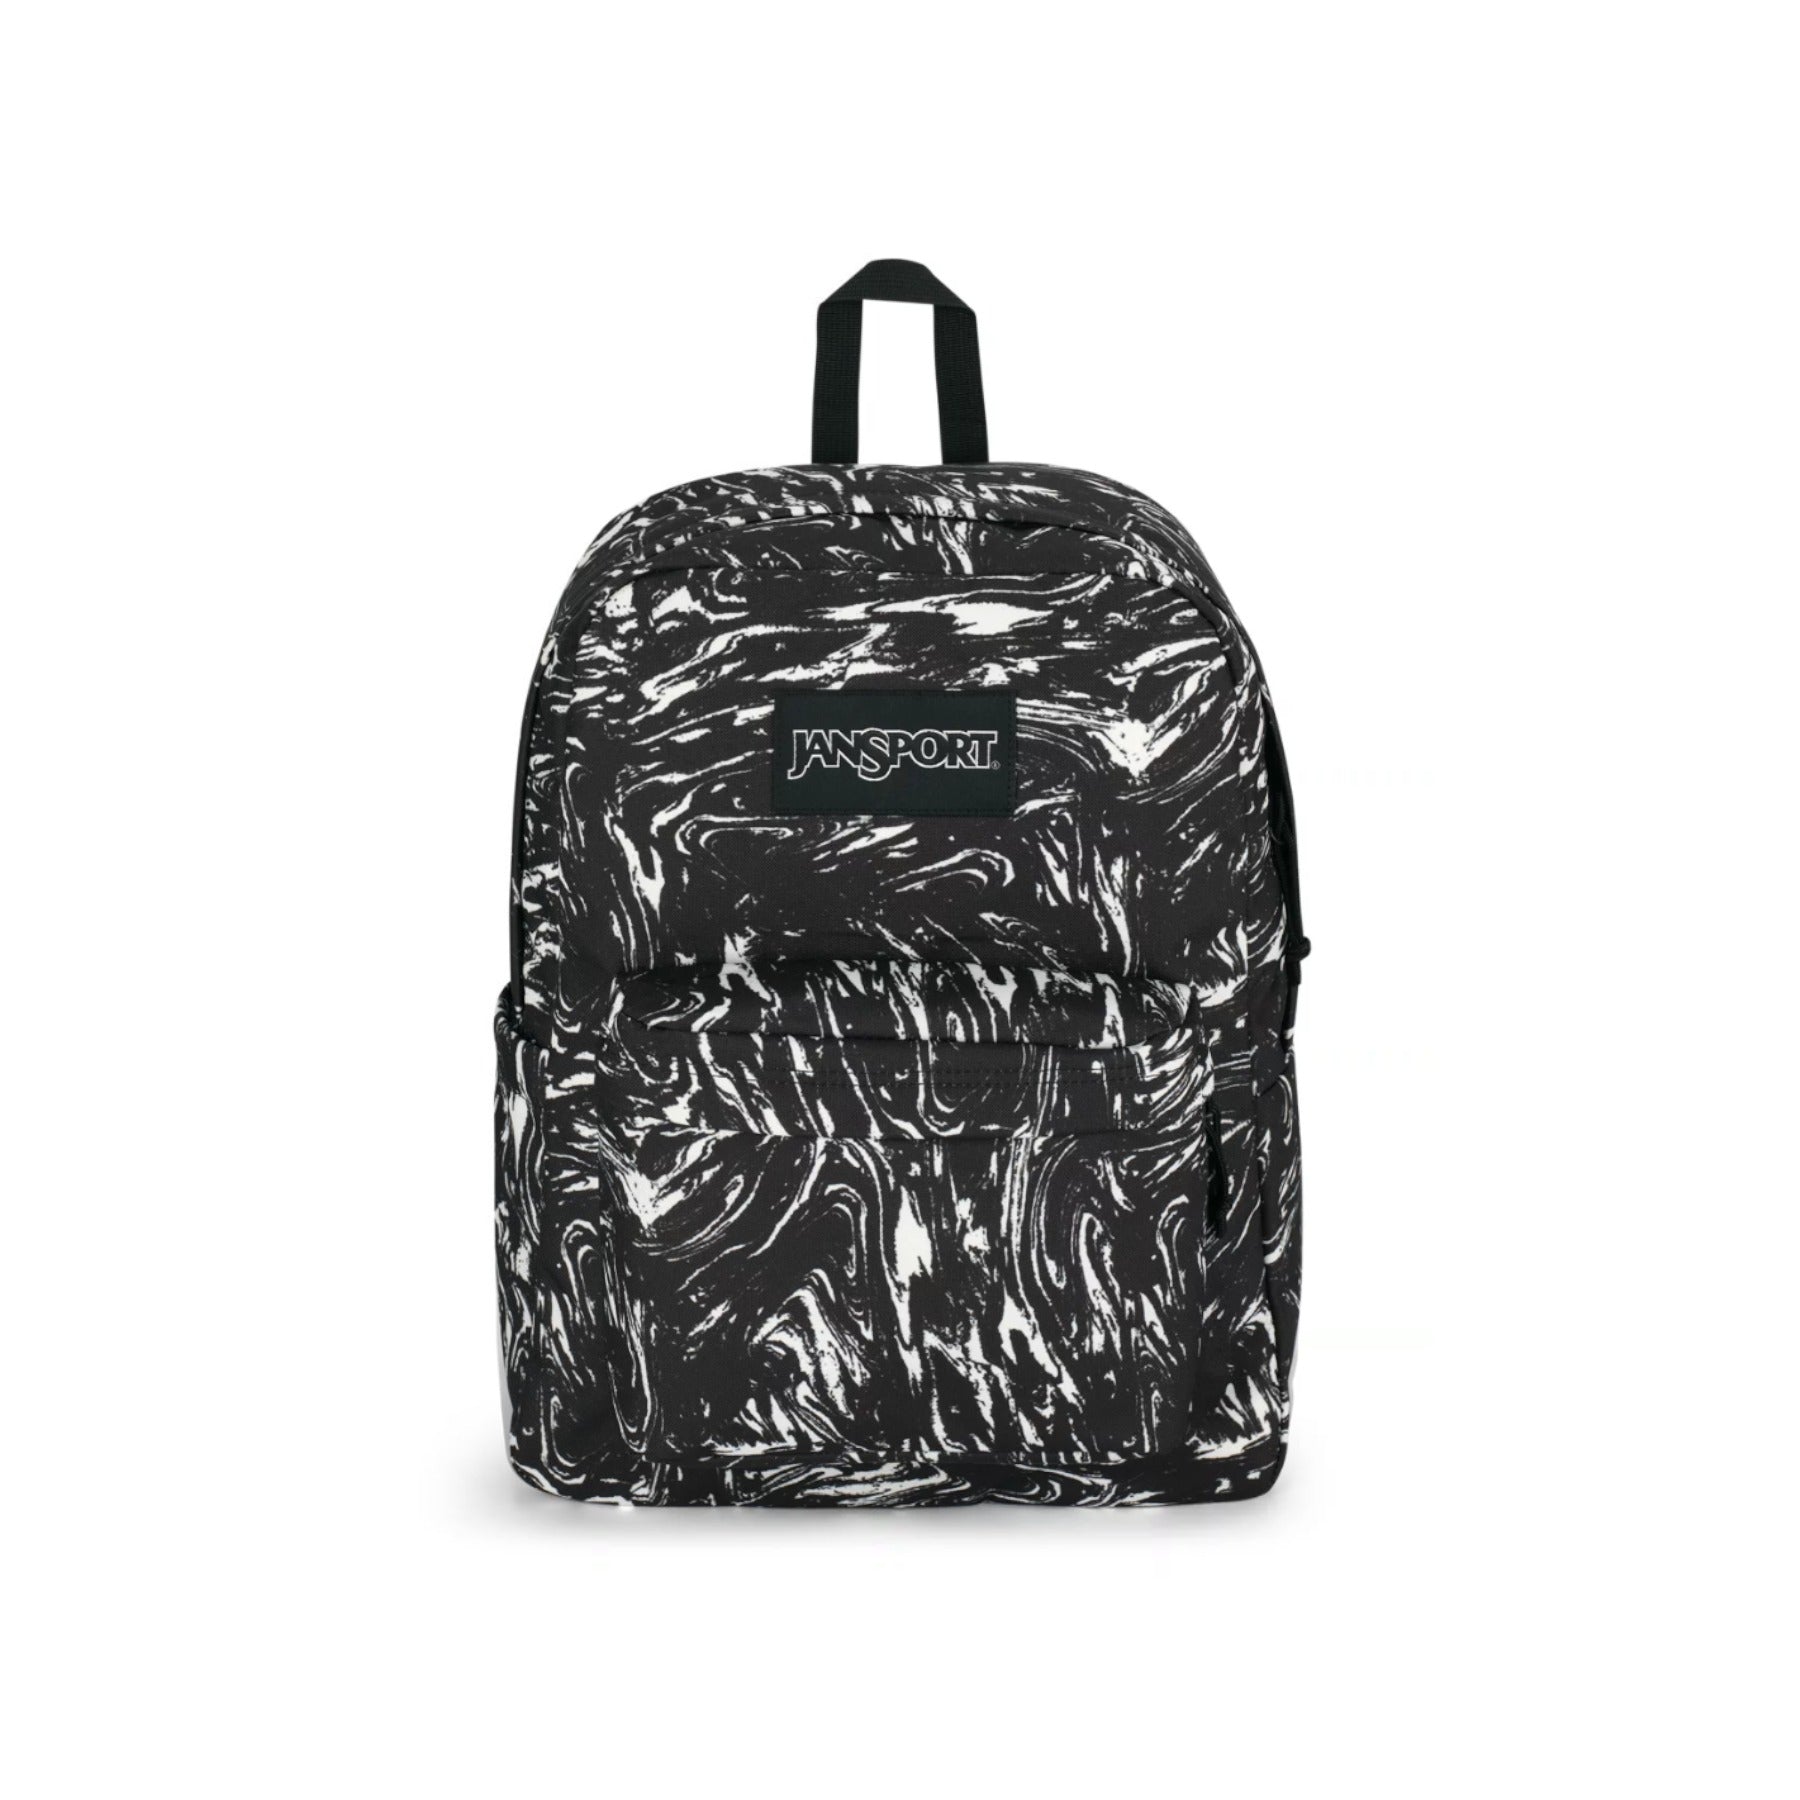 Jansport Superbreak Backpack - Marbled Motion Black